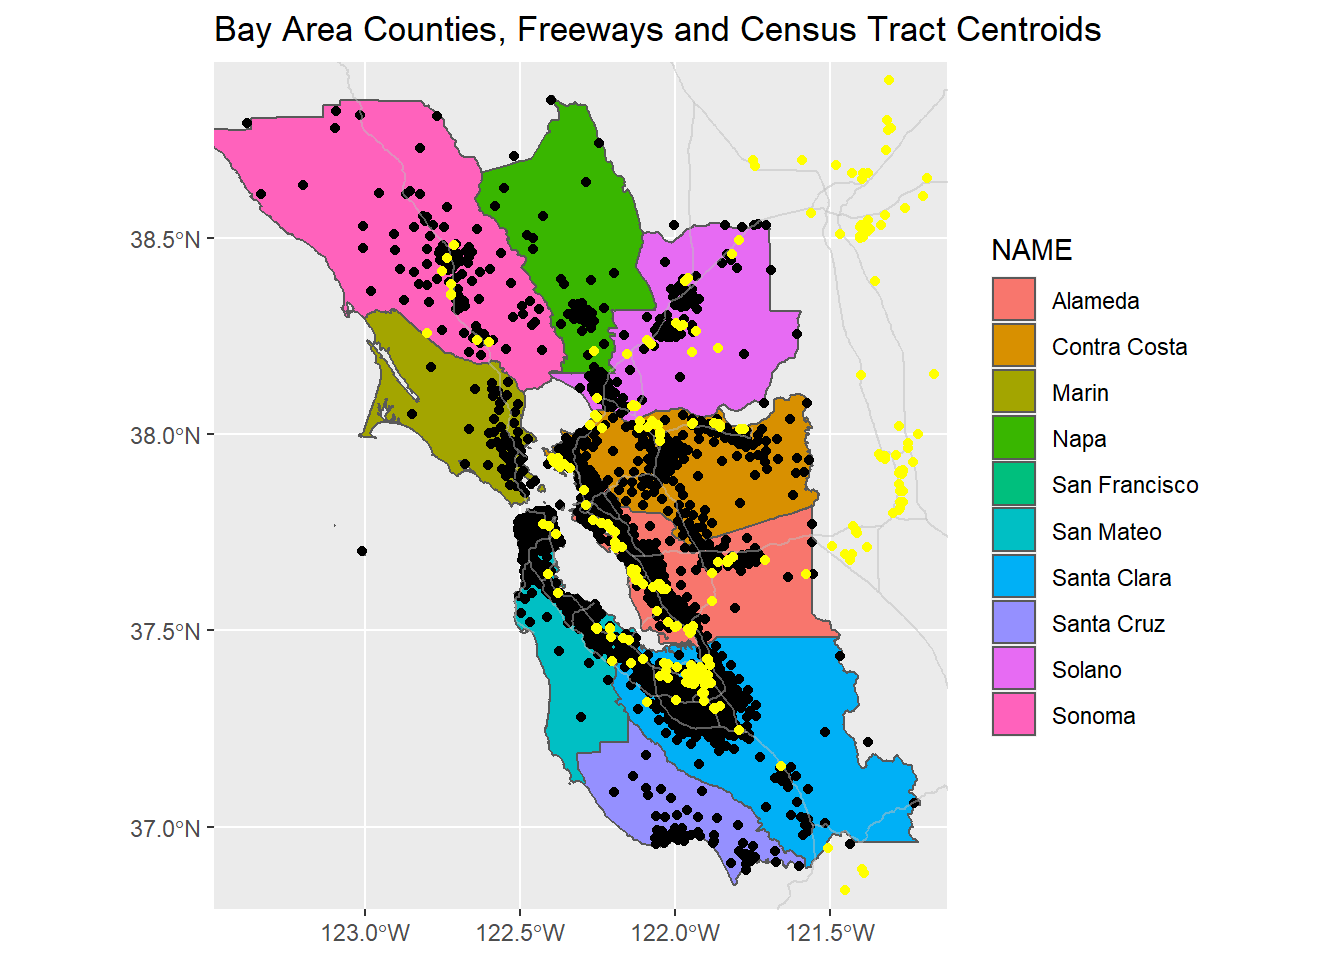 Sierra data